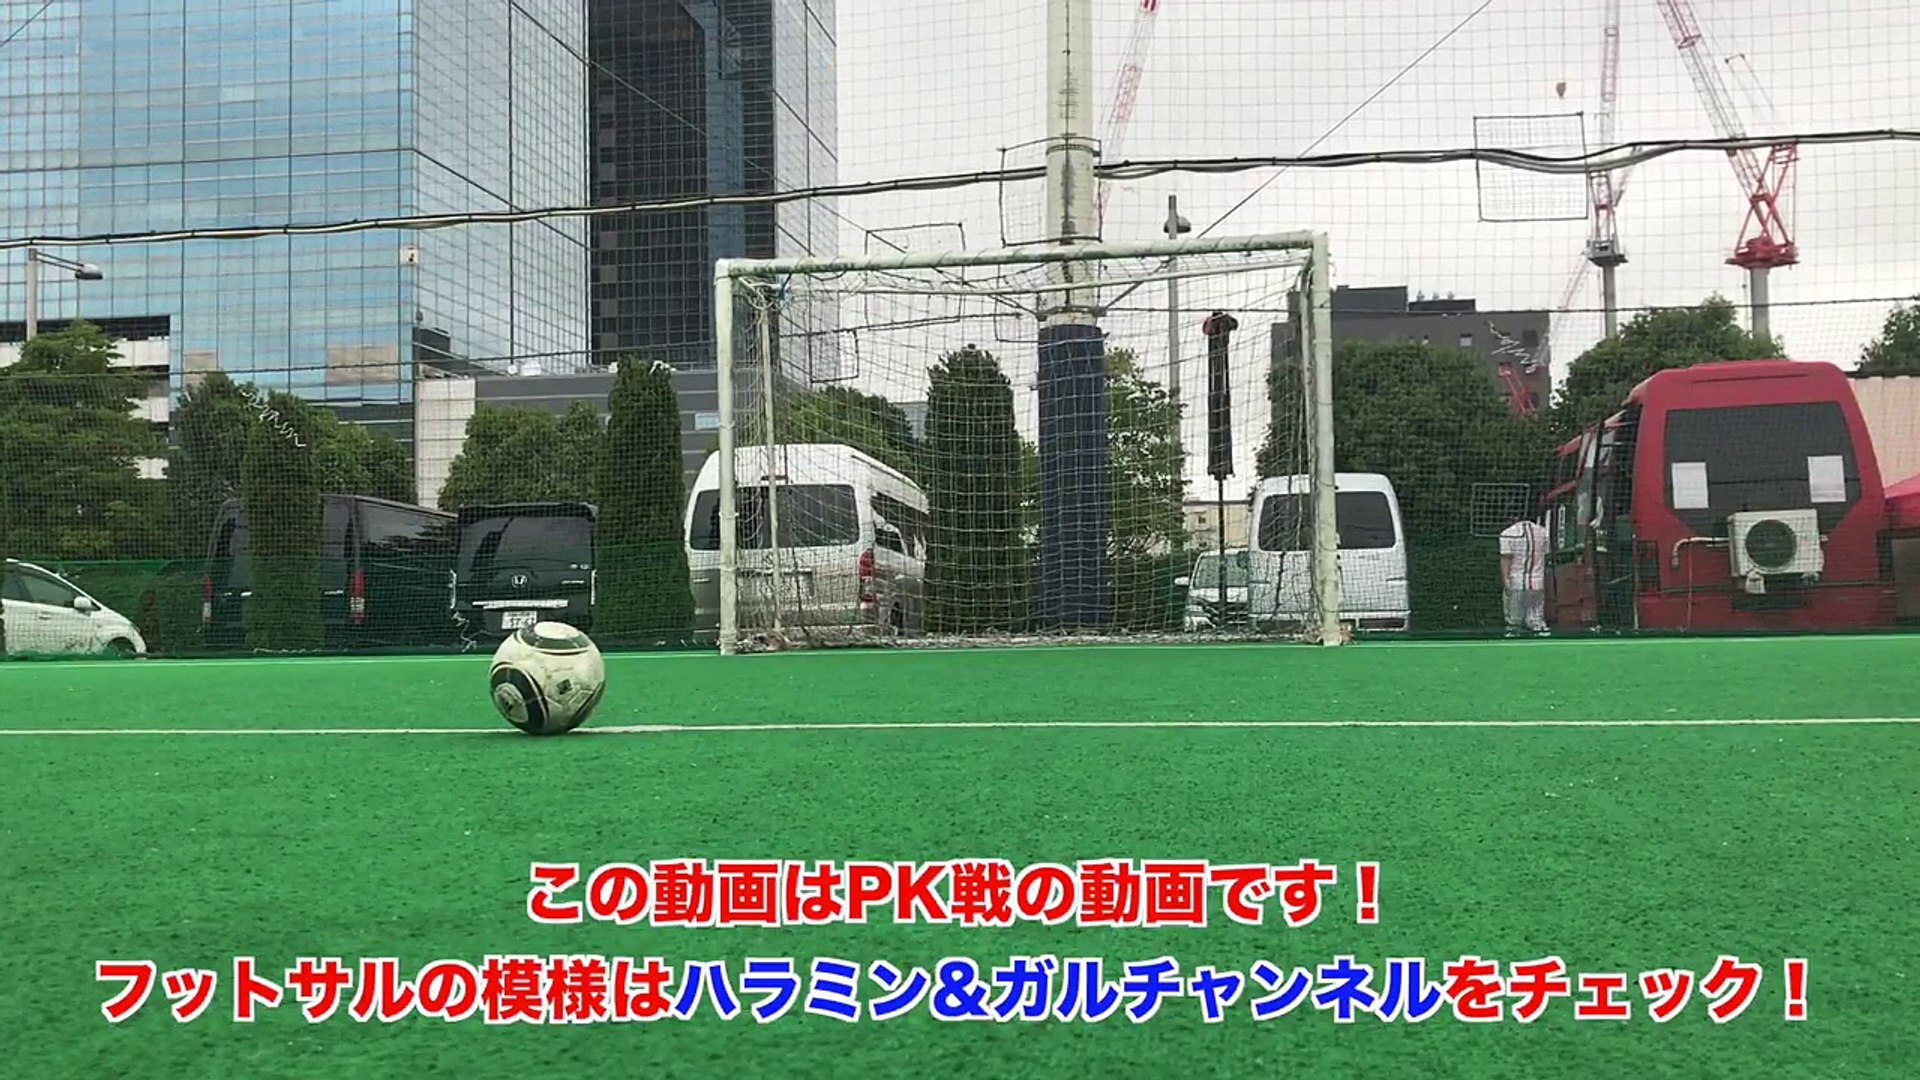 サッカー元日本代表が参戦 Appbank サッカー部とpk対決 Video Dailymotion